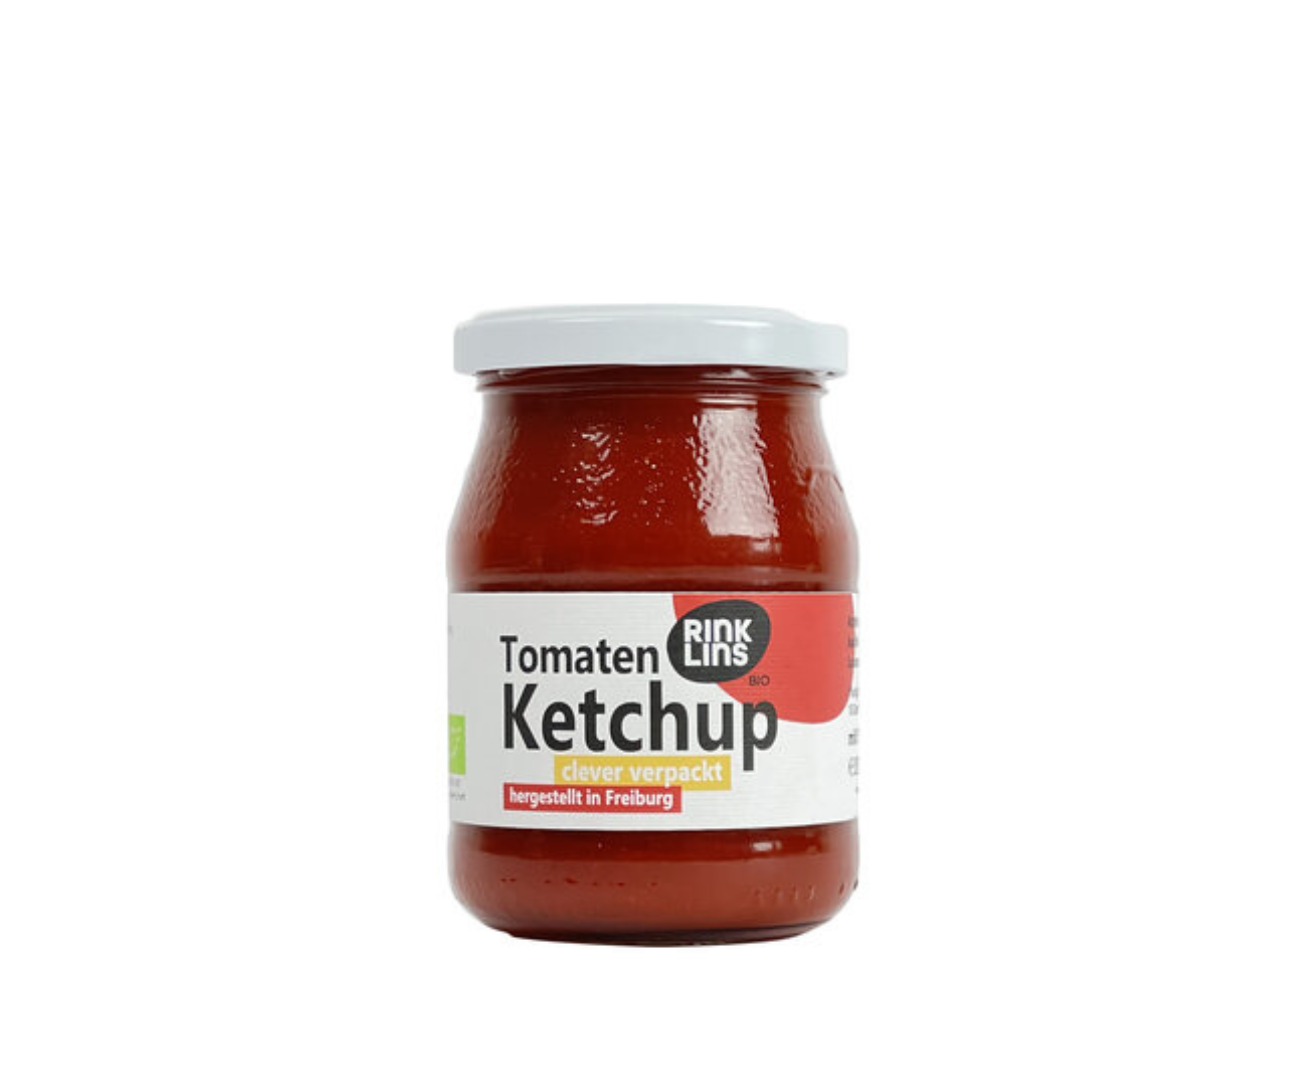 Ketchup rinklins cons 280g